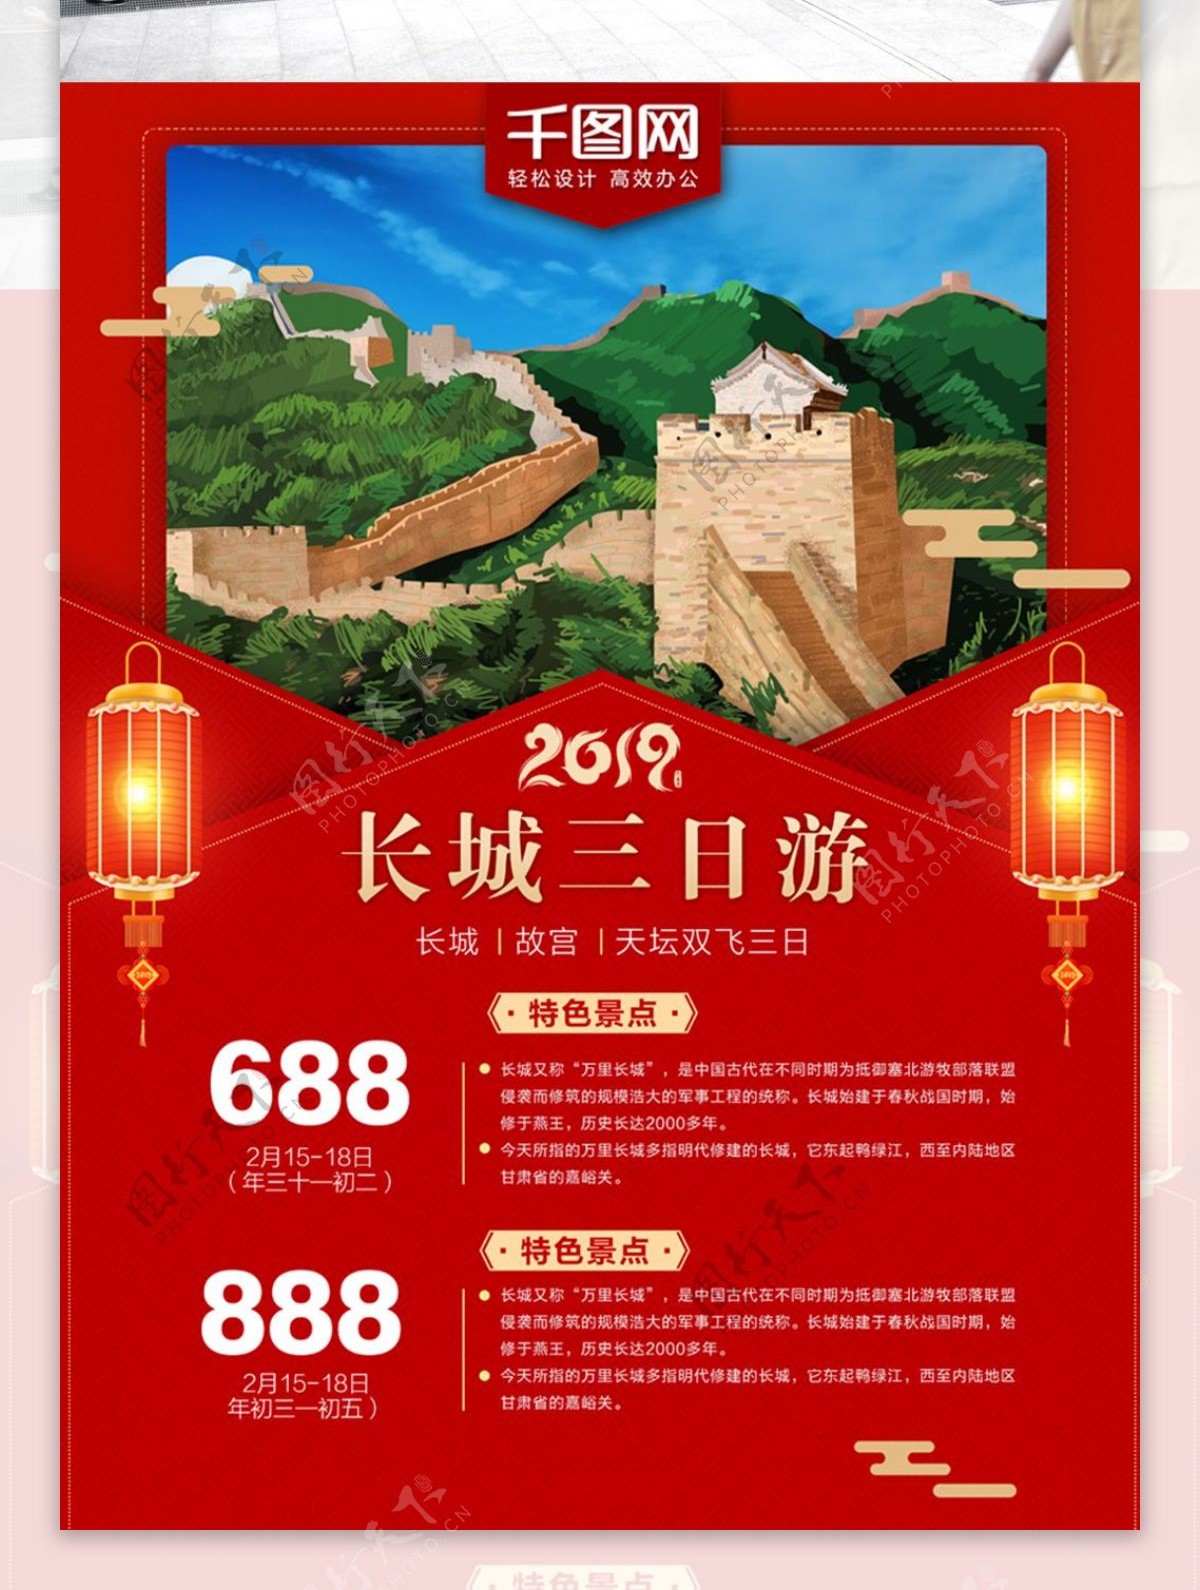 2019新年长城旅游商业海报